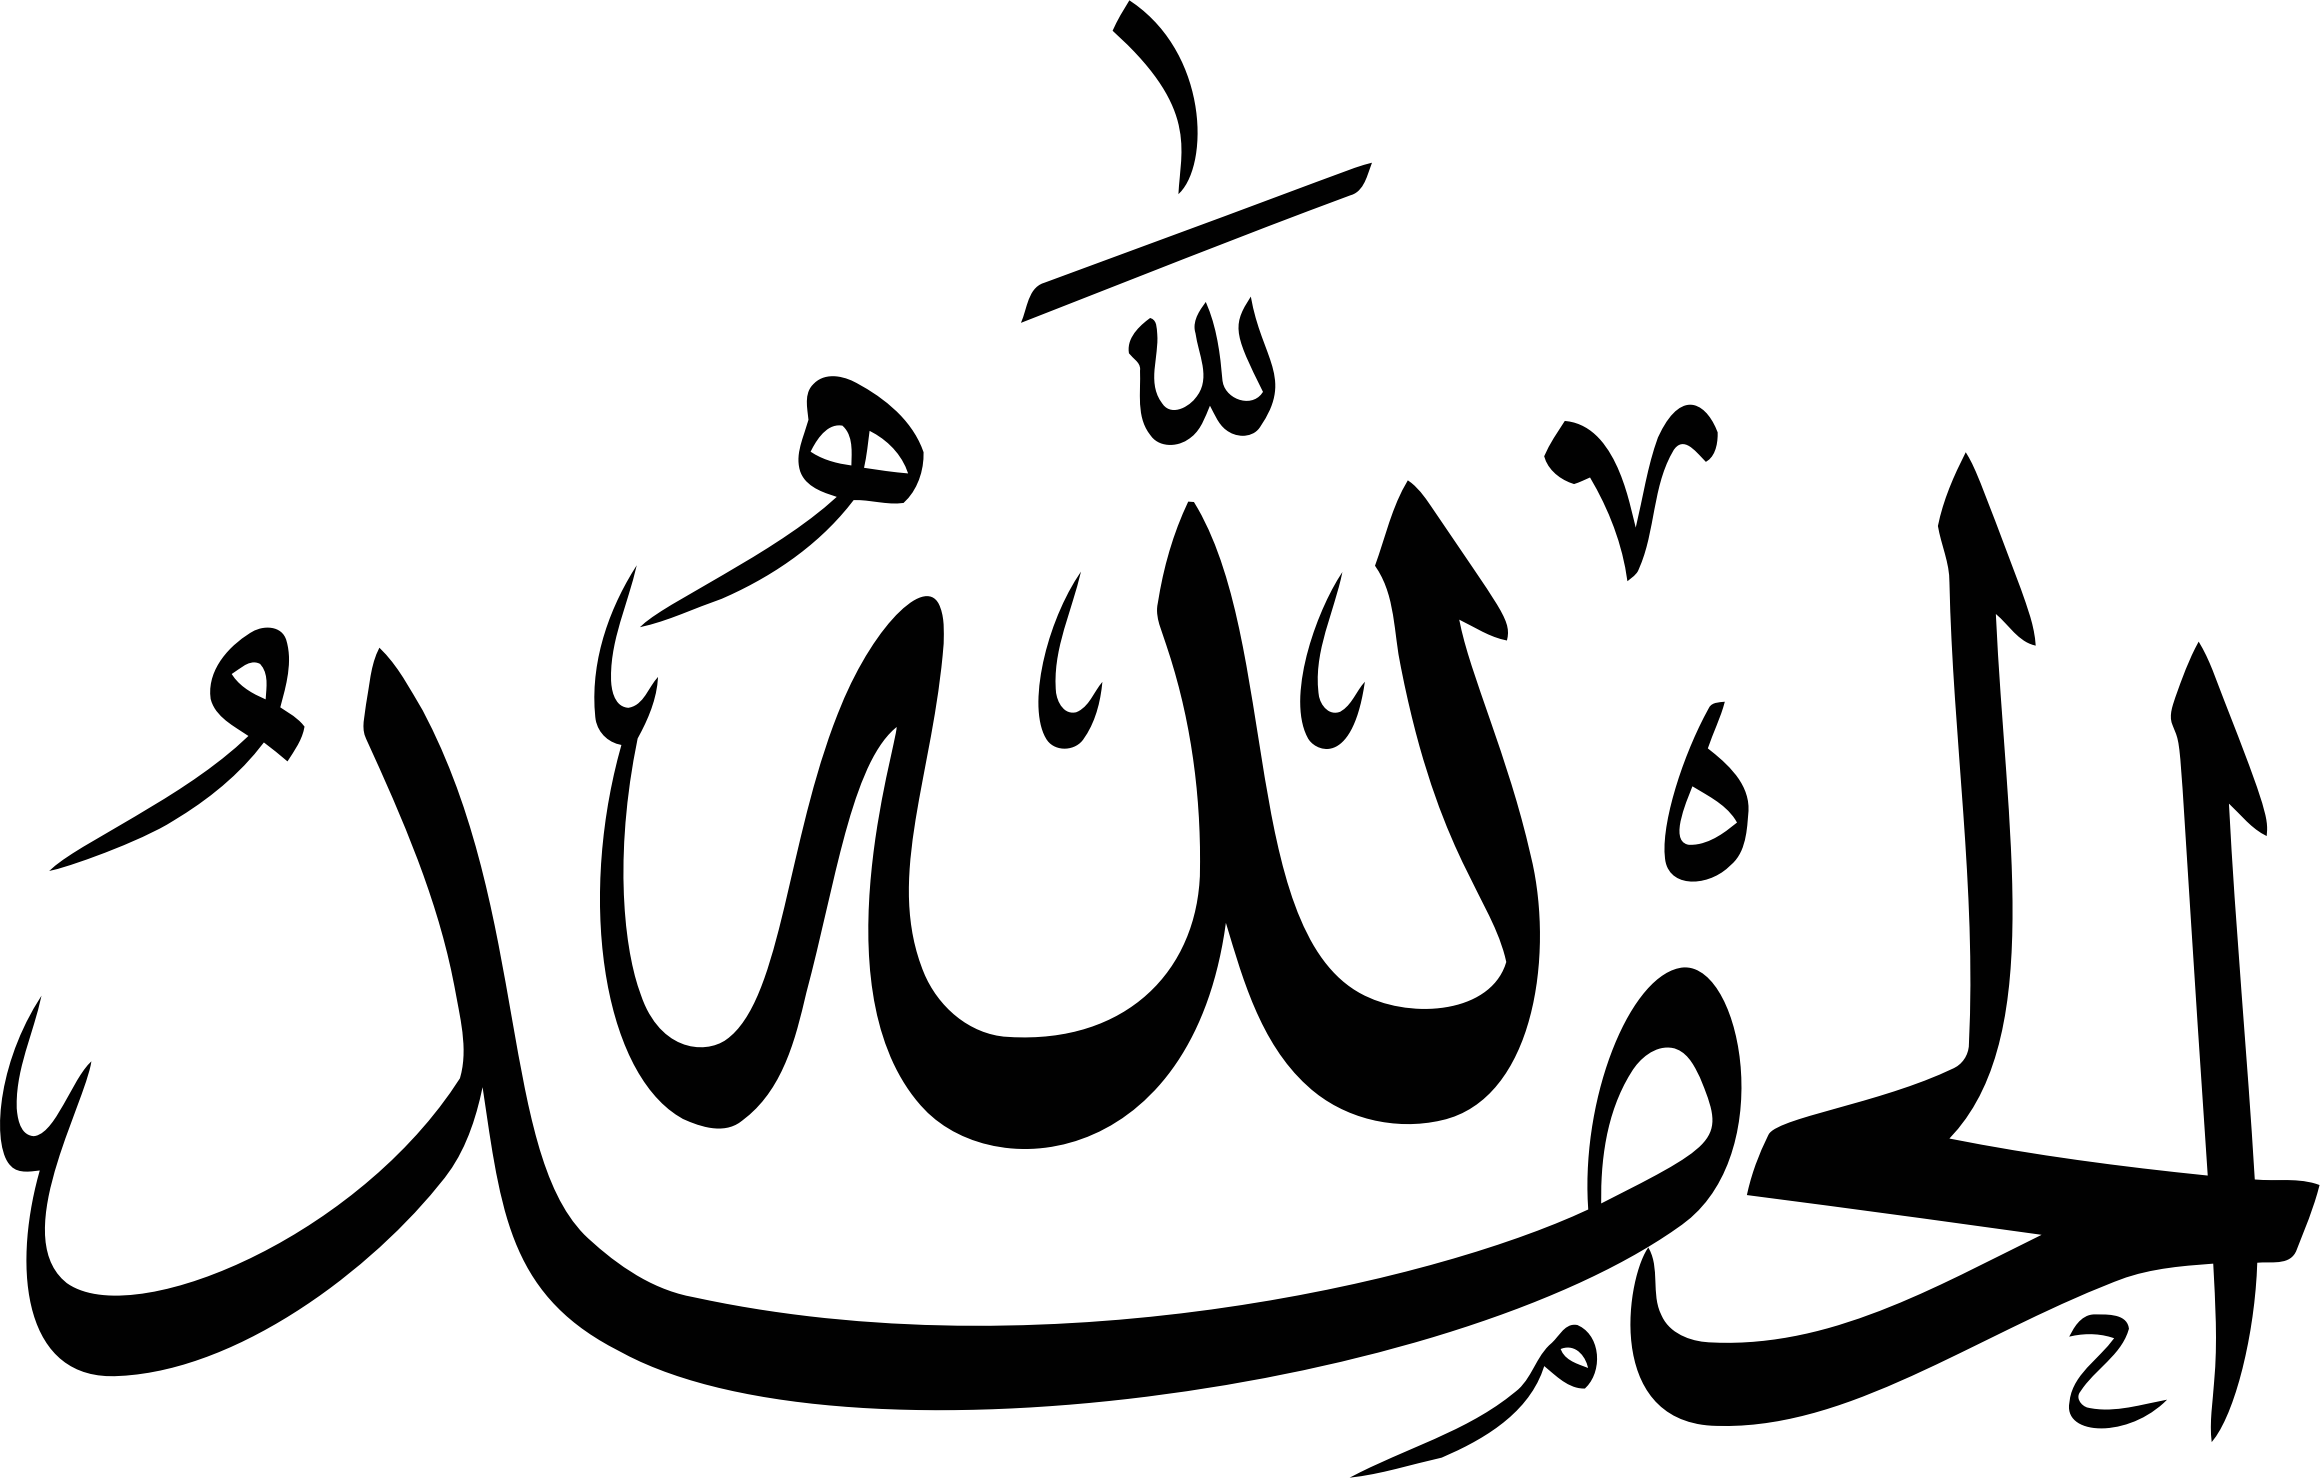 Арабская надпись на машину. Арабская каллиграфия АЛЬХАМДУЛИЛЛЯХ. Арабские надписи. Исламские надписи. Красивые надписи на арабском.